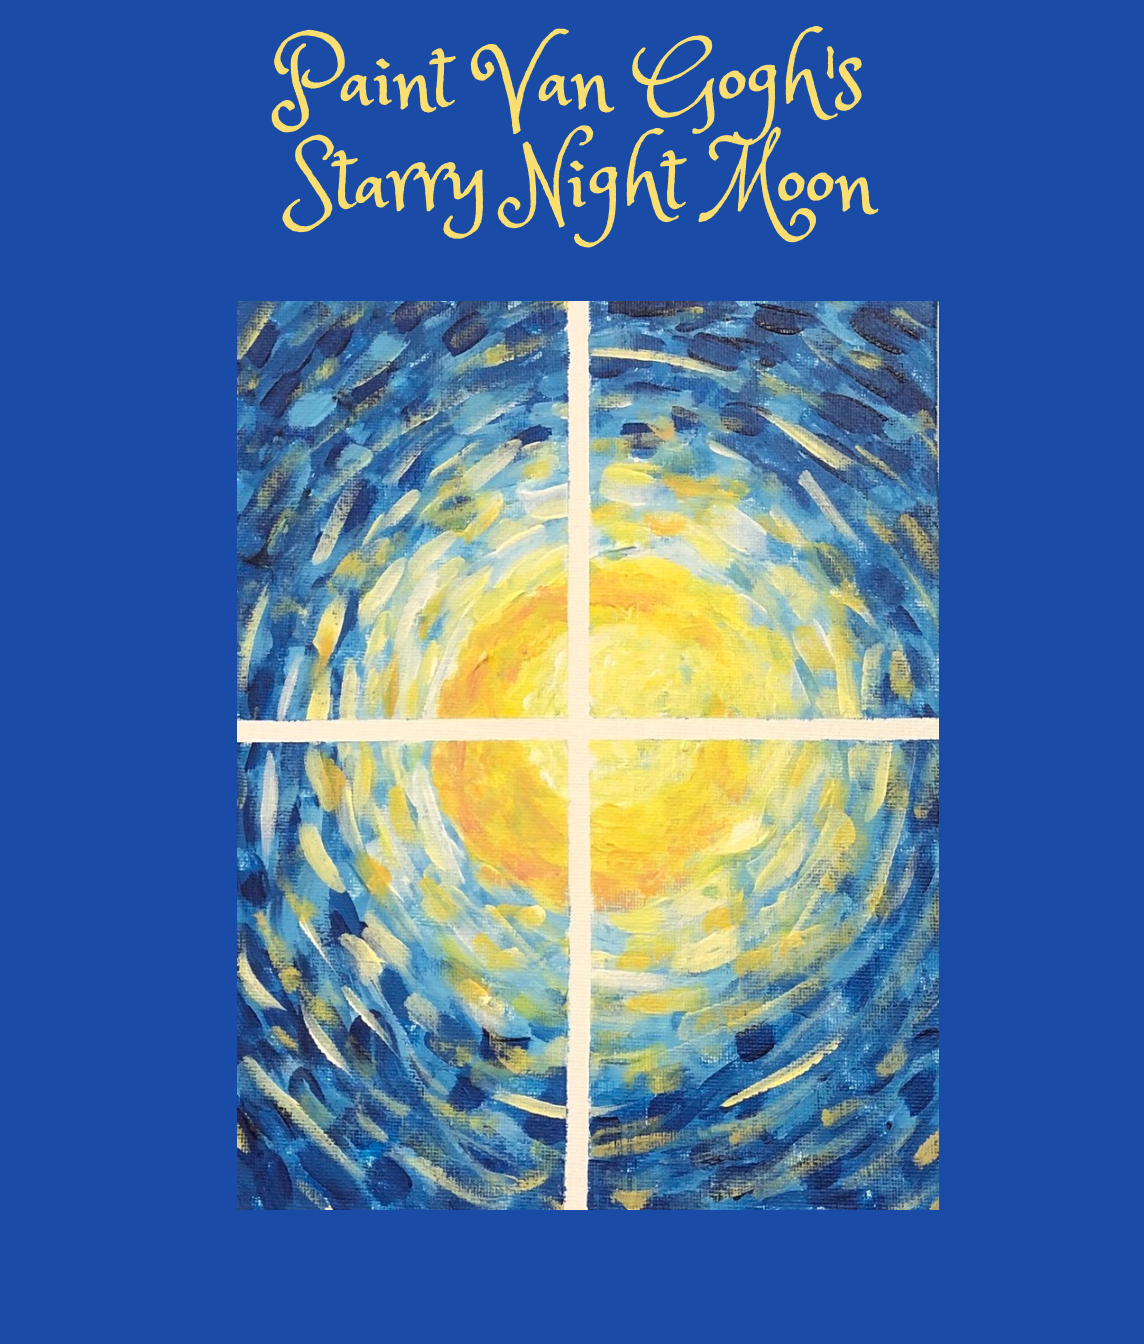 Paint Van Gogh's Starry Night Moon